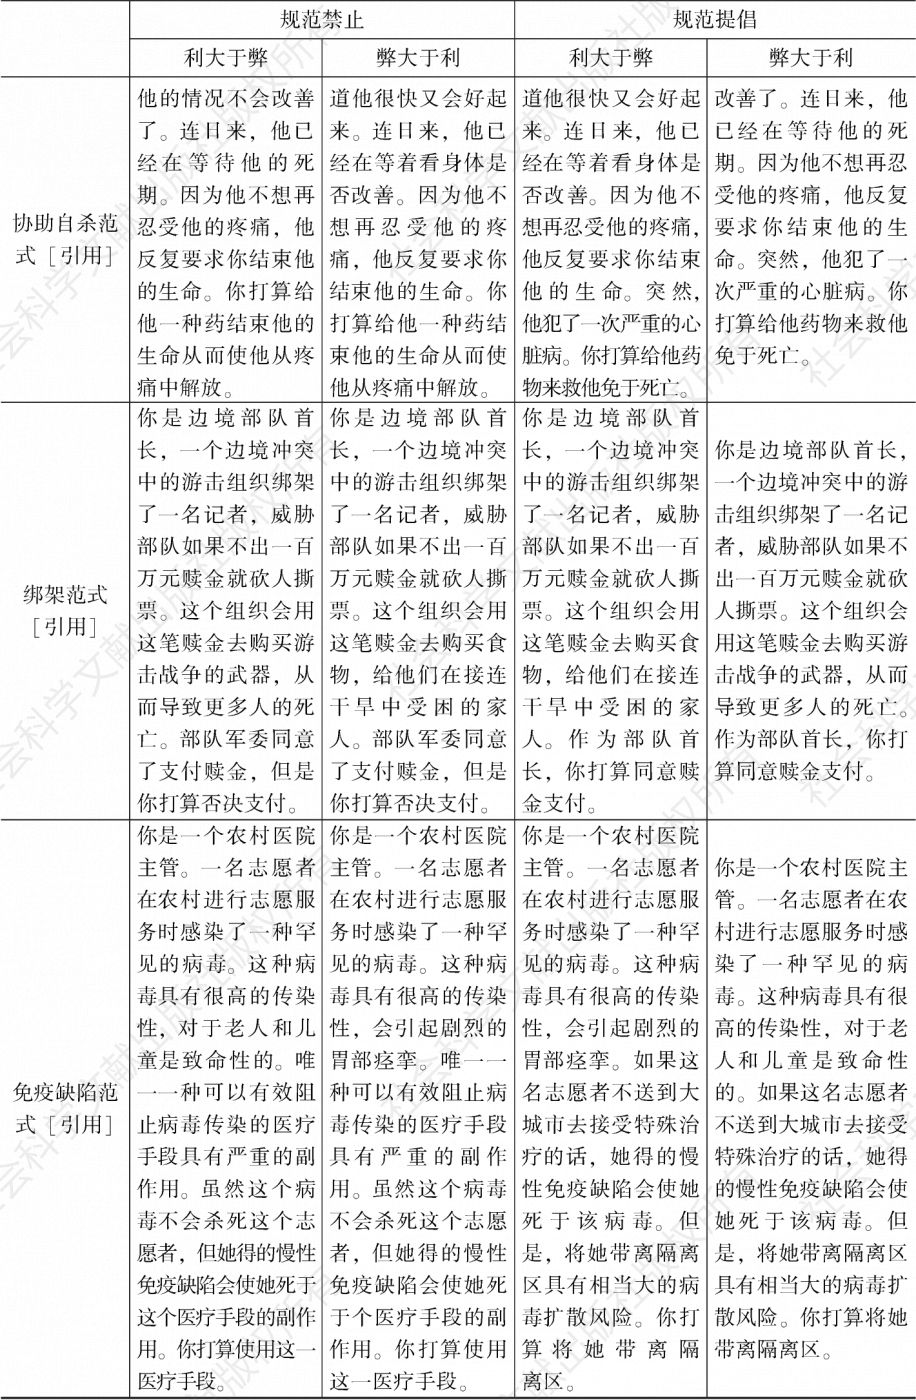 中文版规范与结果的组合情境材料-续表2